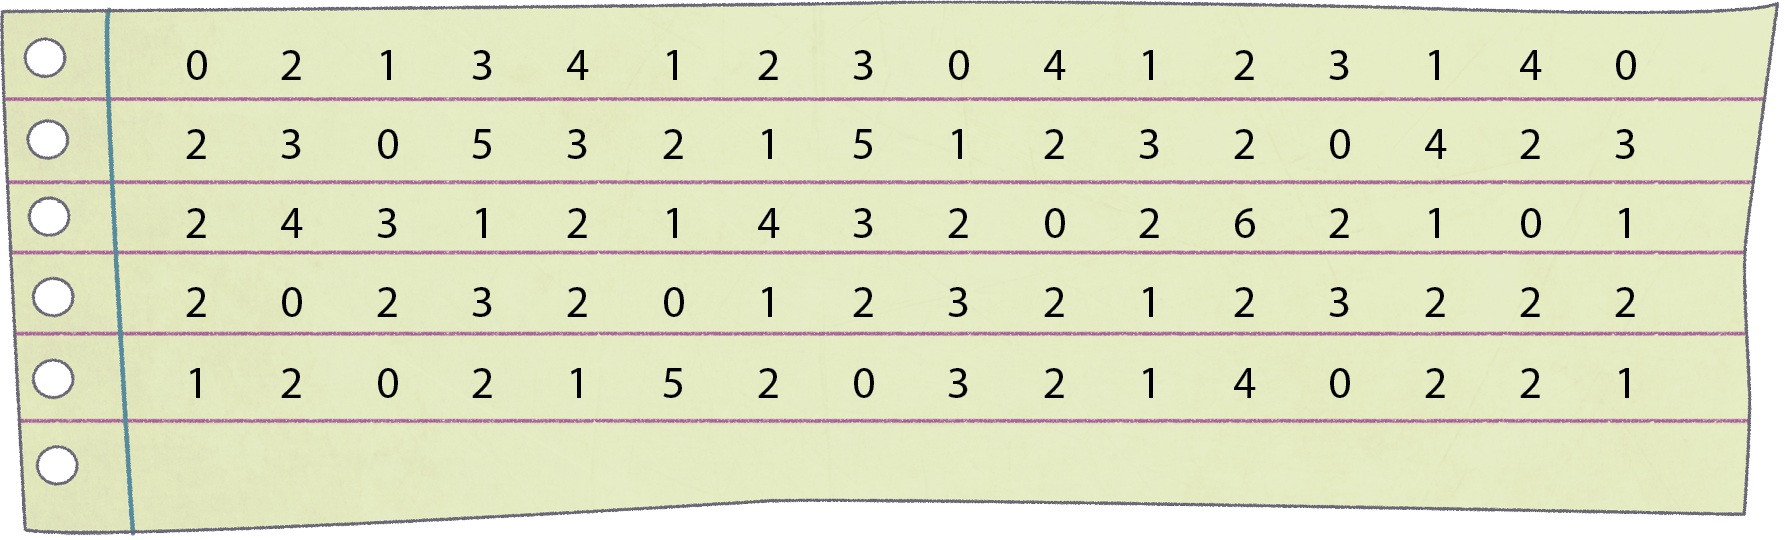 Ilustração. Folha de caderno verde com números. Primeira linha: 0, 2, 1, 3, 4, 1, 2, 3, 0, 4, 1, 2, 3, 1, 4, 0. Segunda linha: 2, 3, 0, 5, 3, 2, 1, 5, 1, 2, 3, 2, 0, 4, 2, 3. Terceira linha: 2, 4, 3, 1, 2, 1, 4, 3, 2, 0, 2, 6, 2, 1, 0, 1. Quarta linha: 2, 0, 2, 3, 2, 0, 1, 2, 3, 2, 1, 2, 3, 2, 2, 2. Quinta linha: 1, 2, 0, 2, 1, 5, 2, 0, 3, 2, 1, 4, 0, 2, 2, 1.